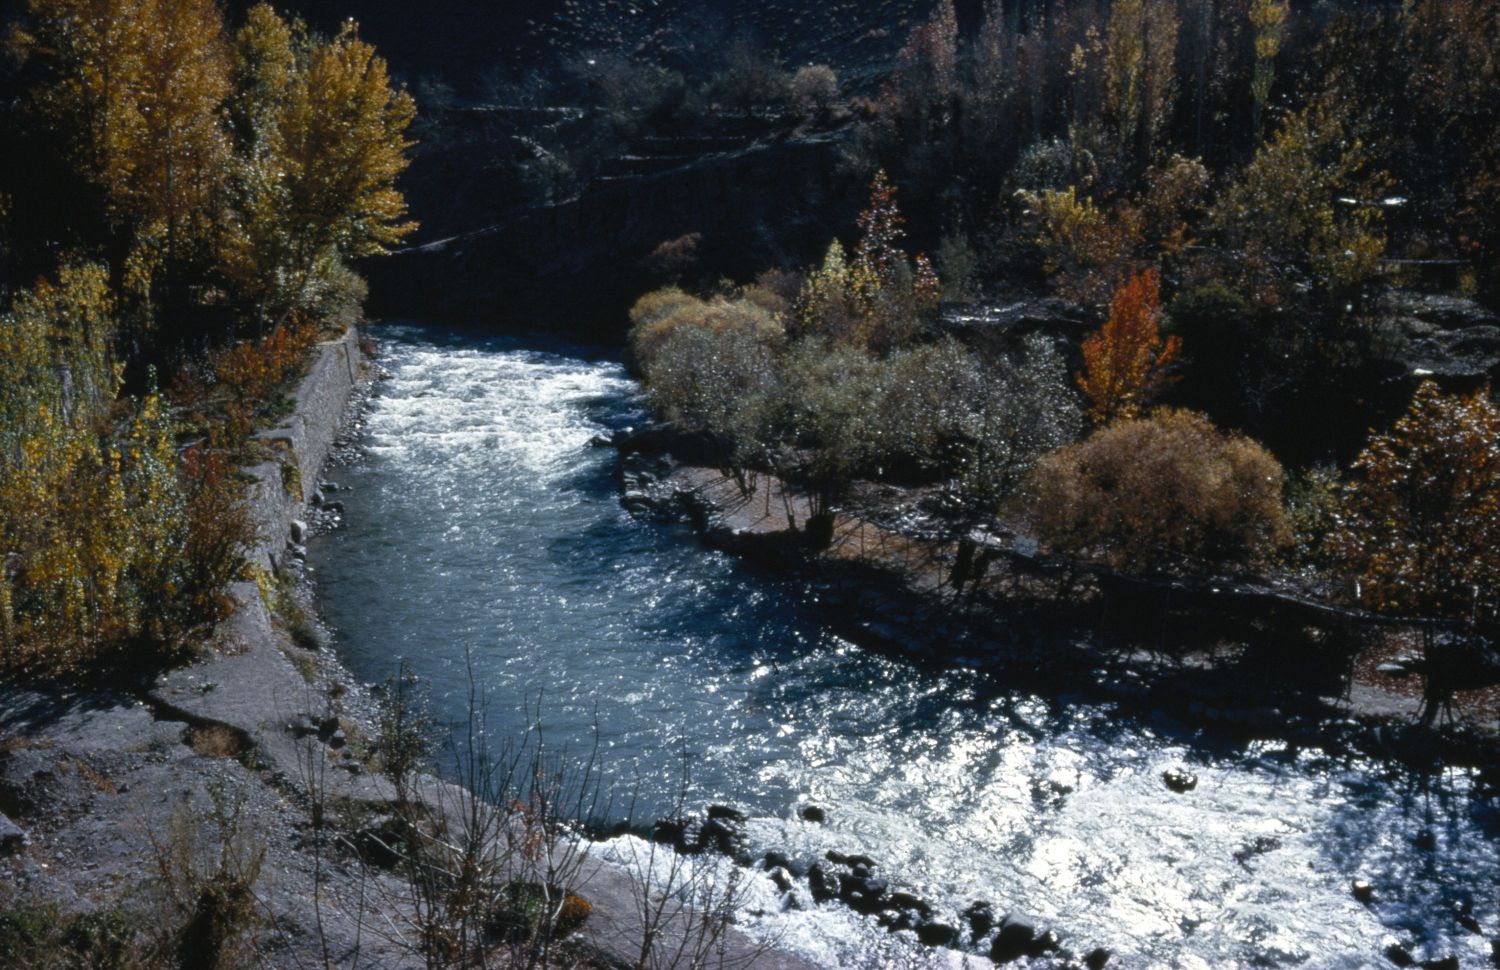 View of river below Karaj Dam in Iran.